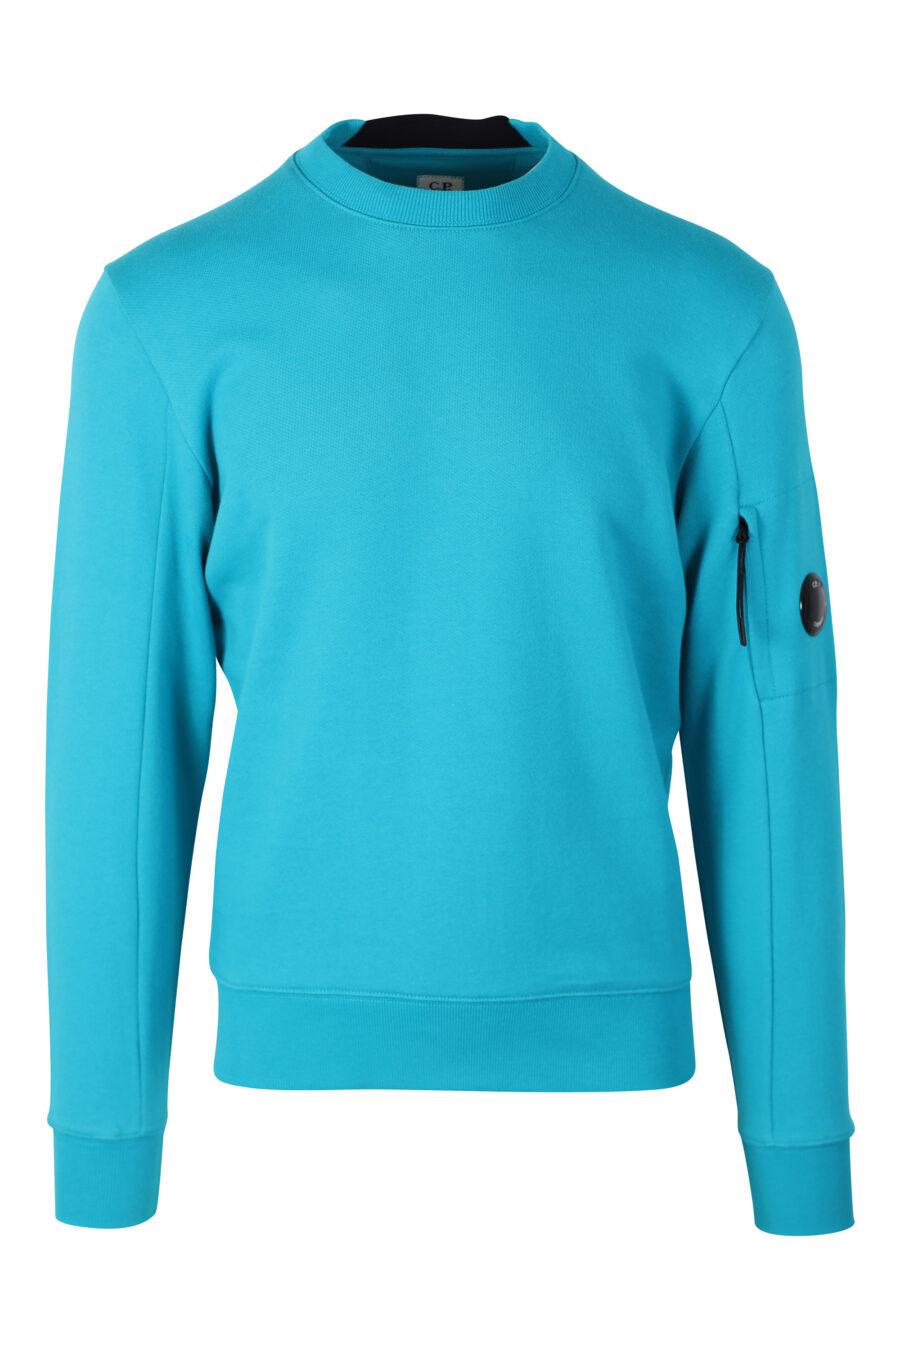 Türkisfarbenes Sweatshirt mit rundem Mini-Logo an der Seite - IMG 2400